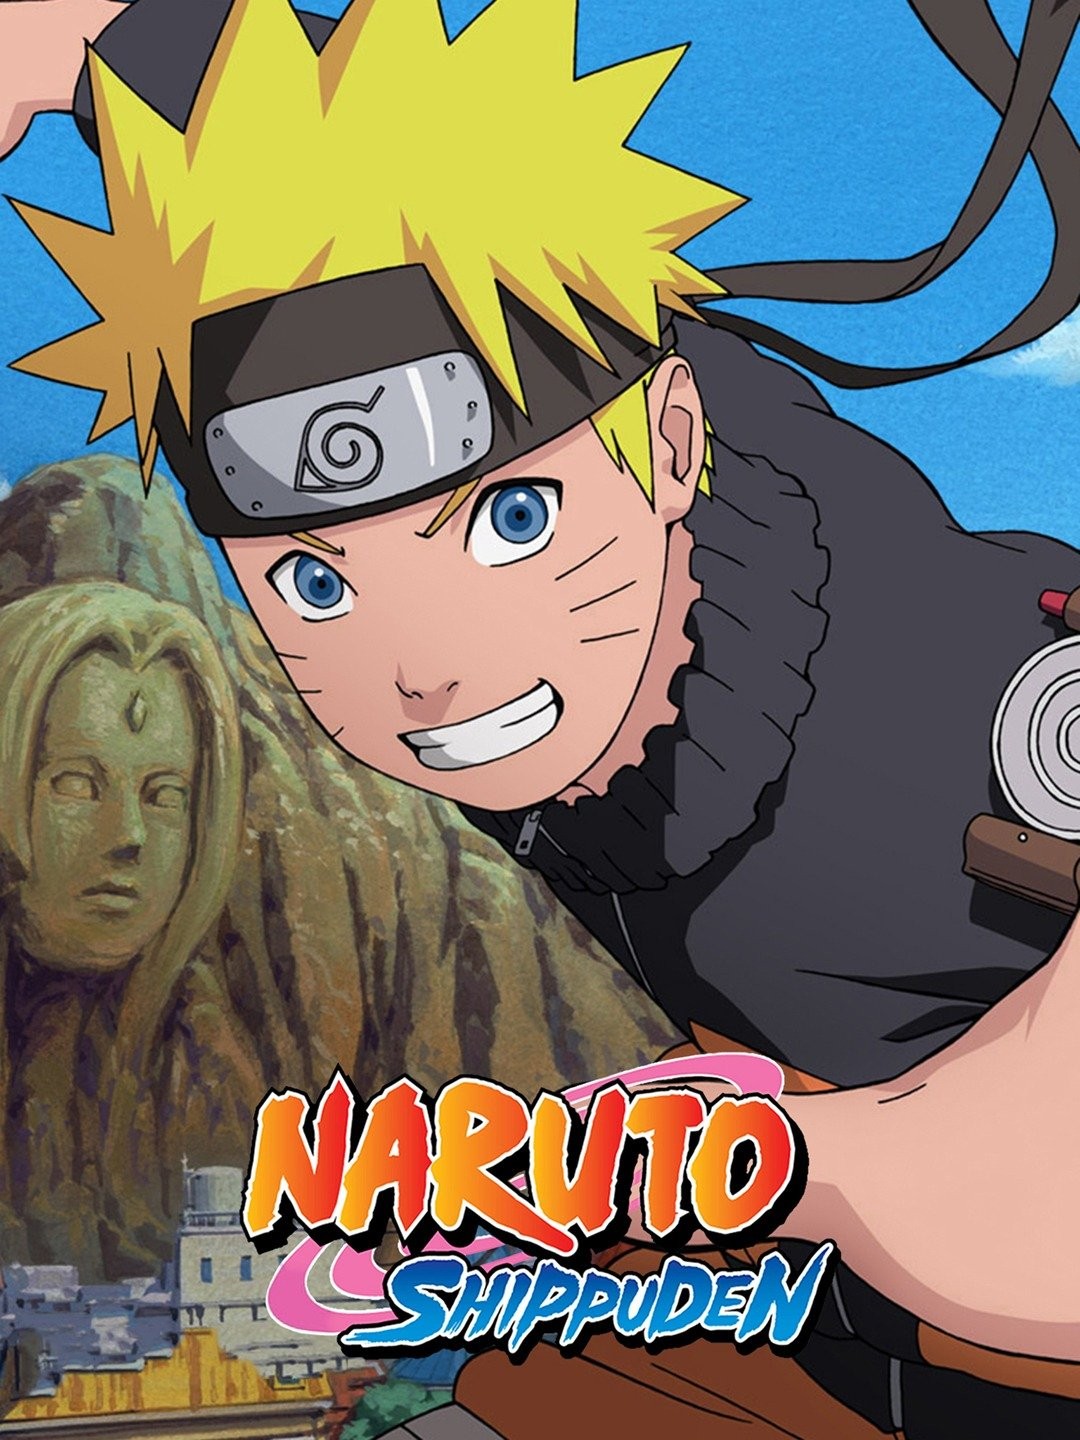 Kotetsu  Naruto shippuden characters, Naruto shippuden anime, Anime naruto